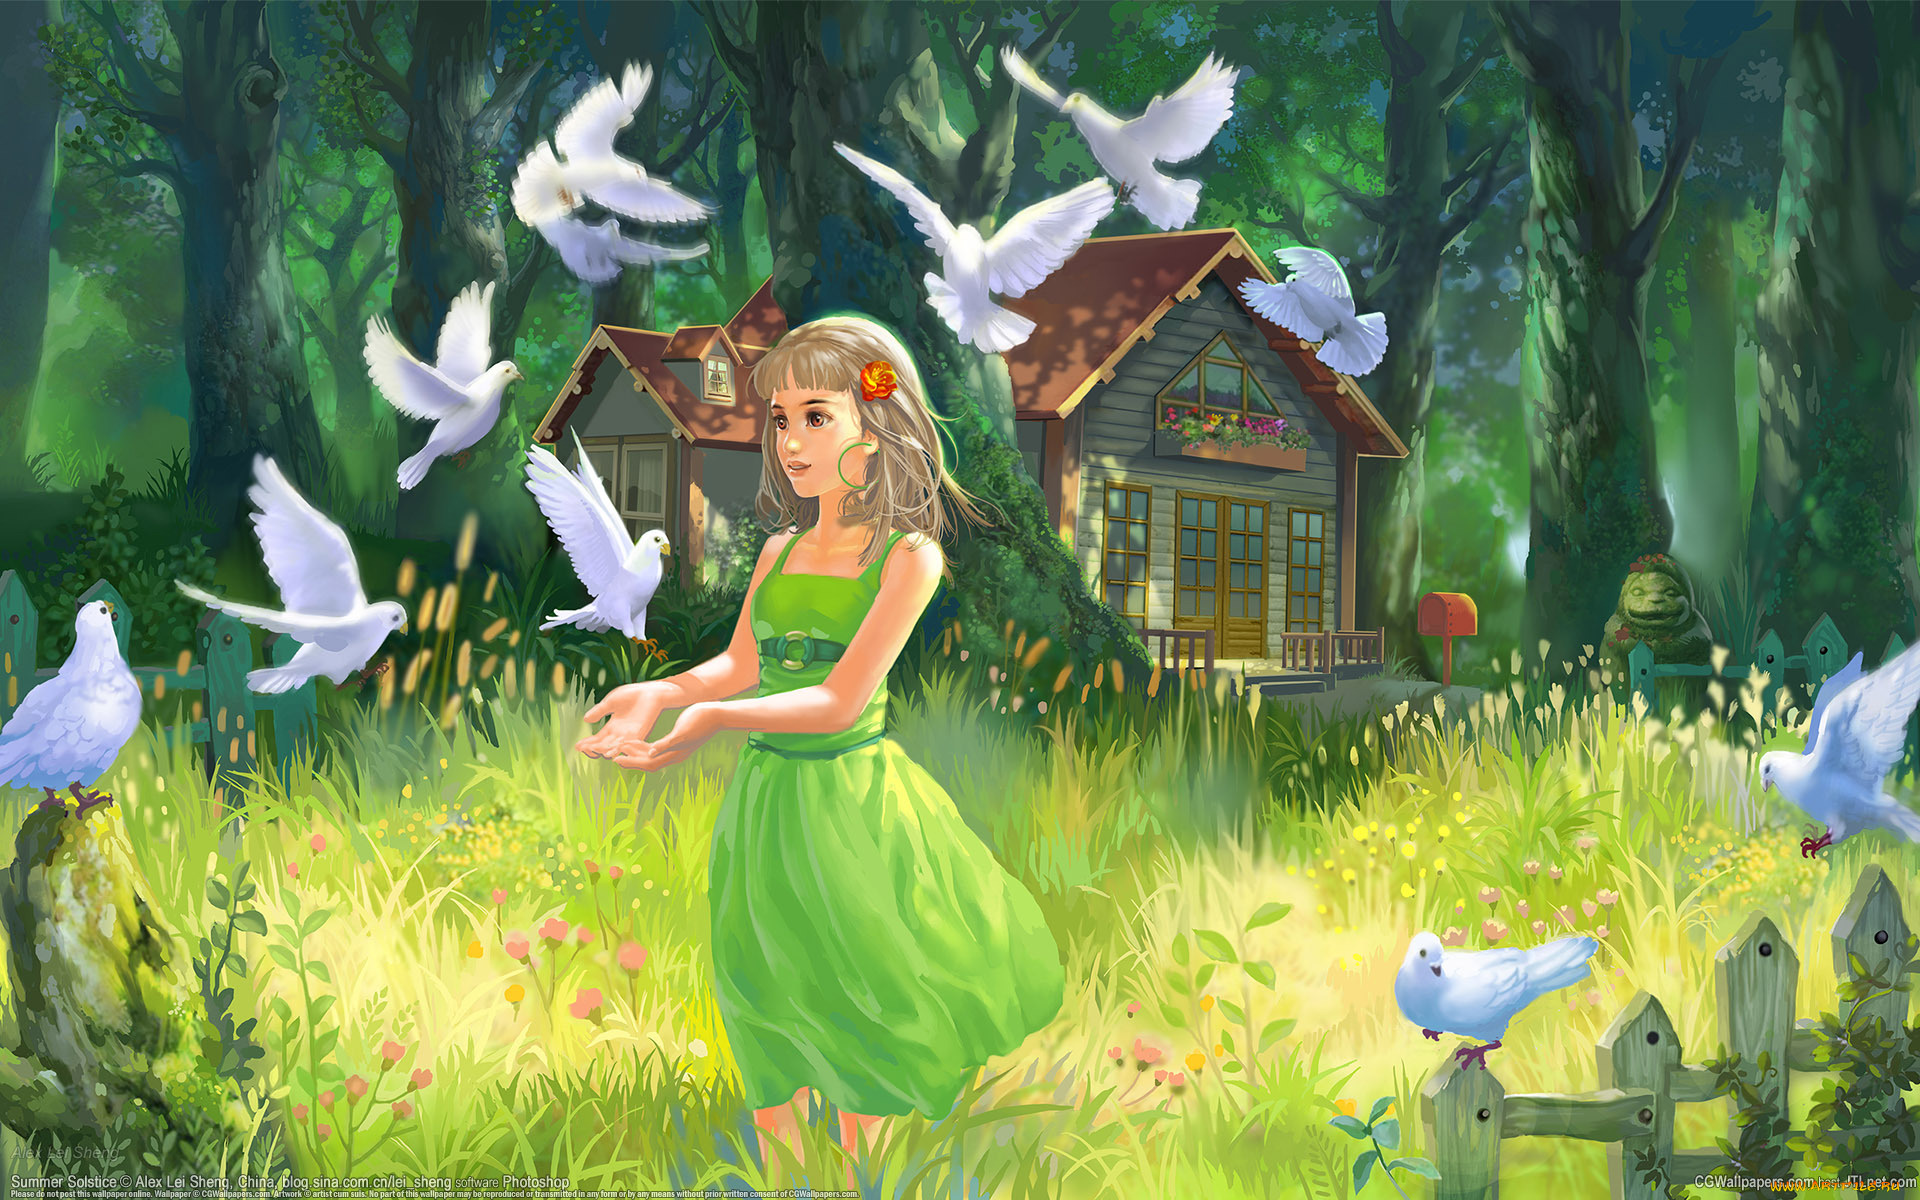 рисованные, дети, домик, голуби, девочка, нарисованно, деревья, травка